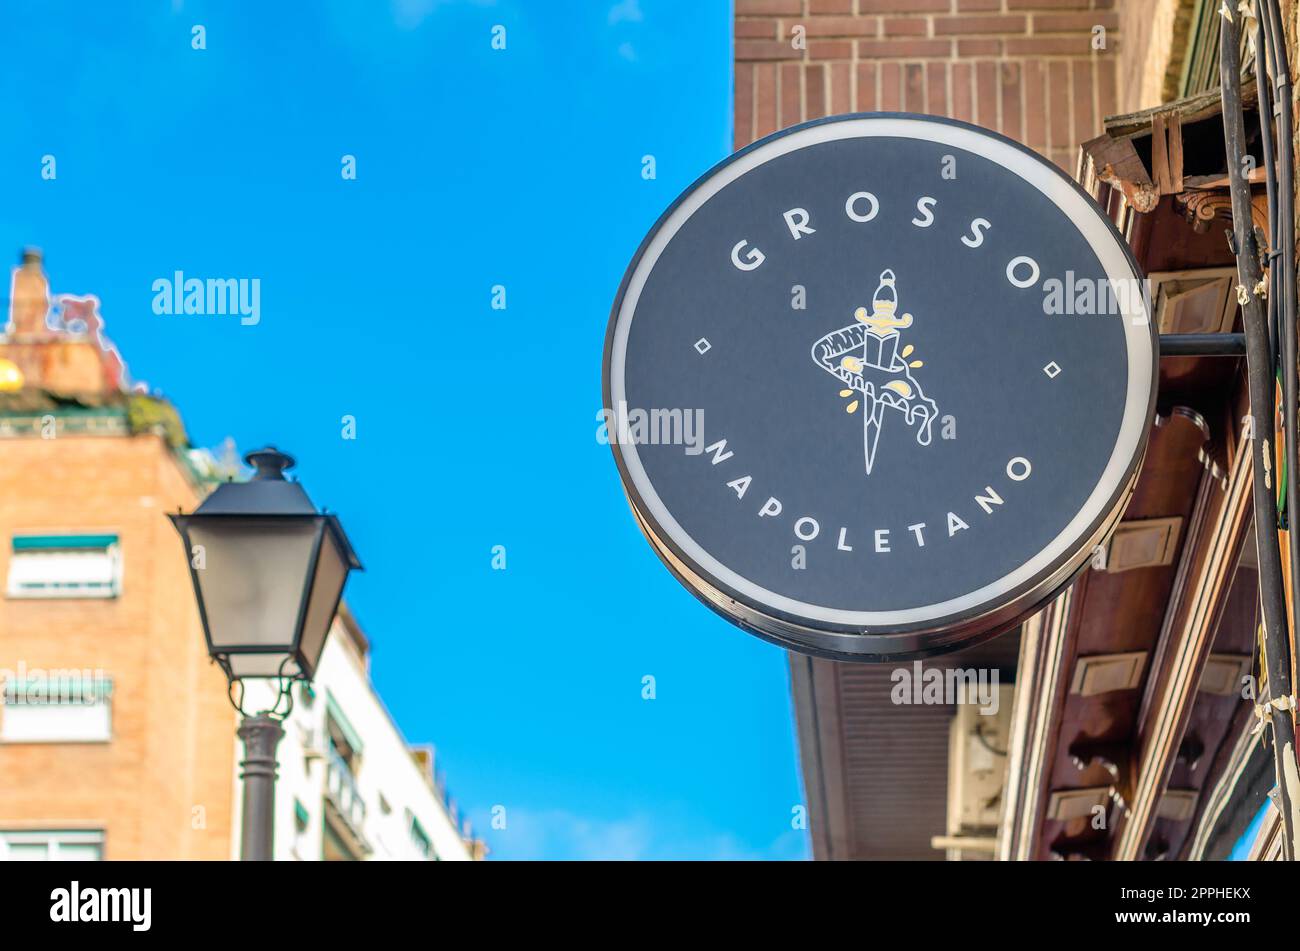 MADRID, ESPAÑA - 5 DE OCTUBRE de 2021: Logotipo de Grosso Napoletano en la fachada de un restaurante en Madrid, España. Grosso Napoletano es una cadena española de pizzerías artesanales, fundada en 2017 Foto de stock